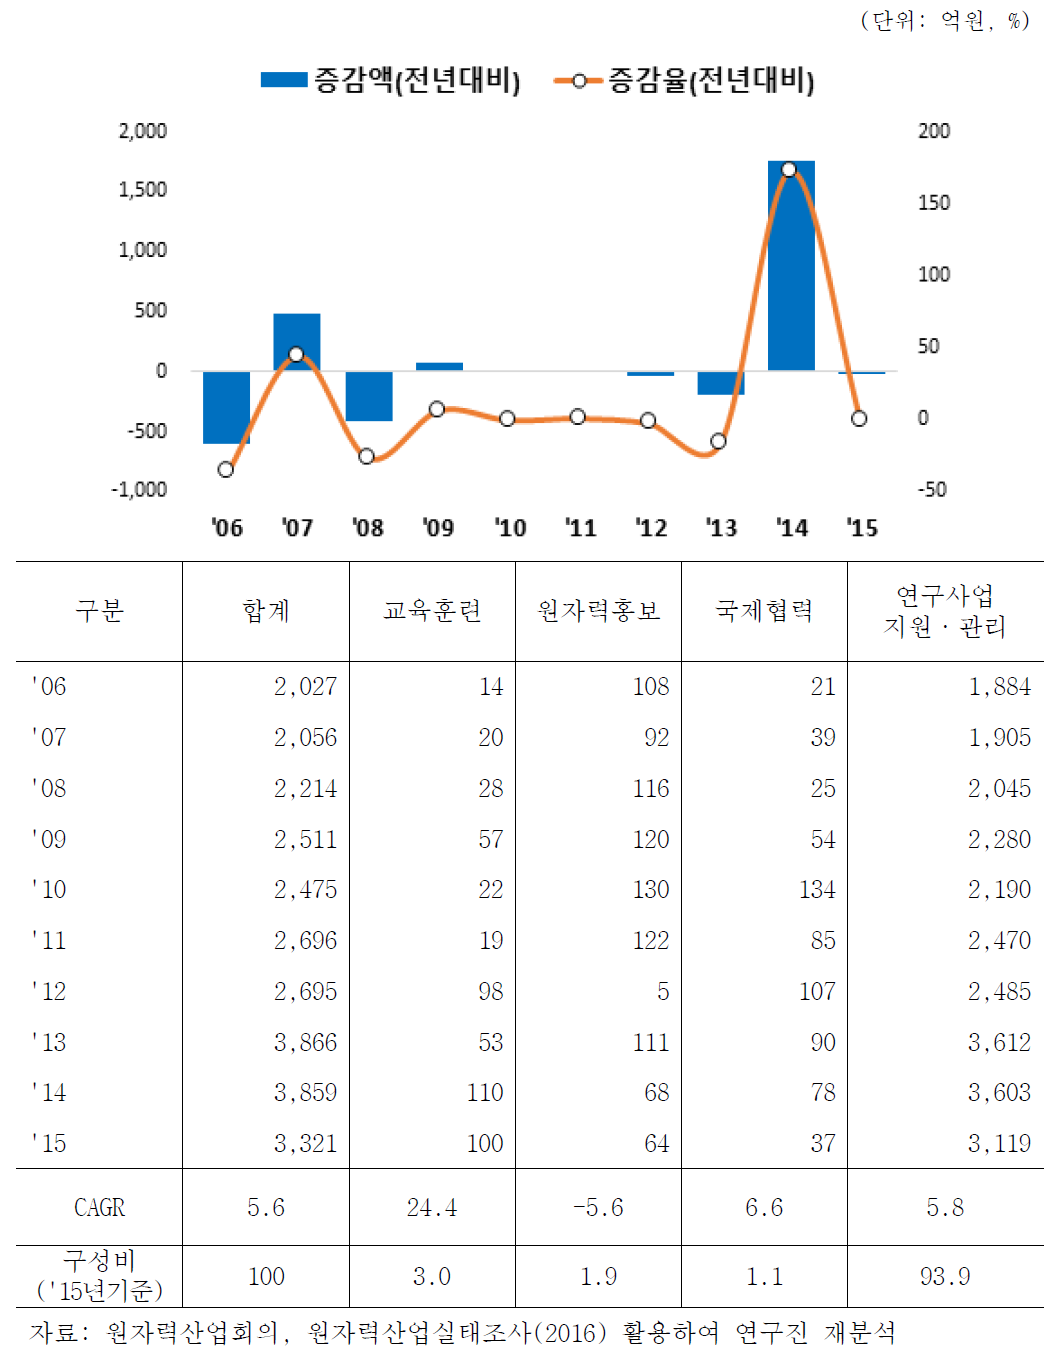 원자력 지원·관리분야 매출액 증감 추이(2006-2015)